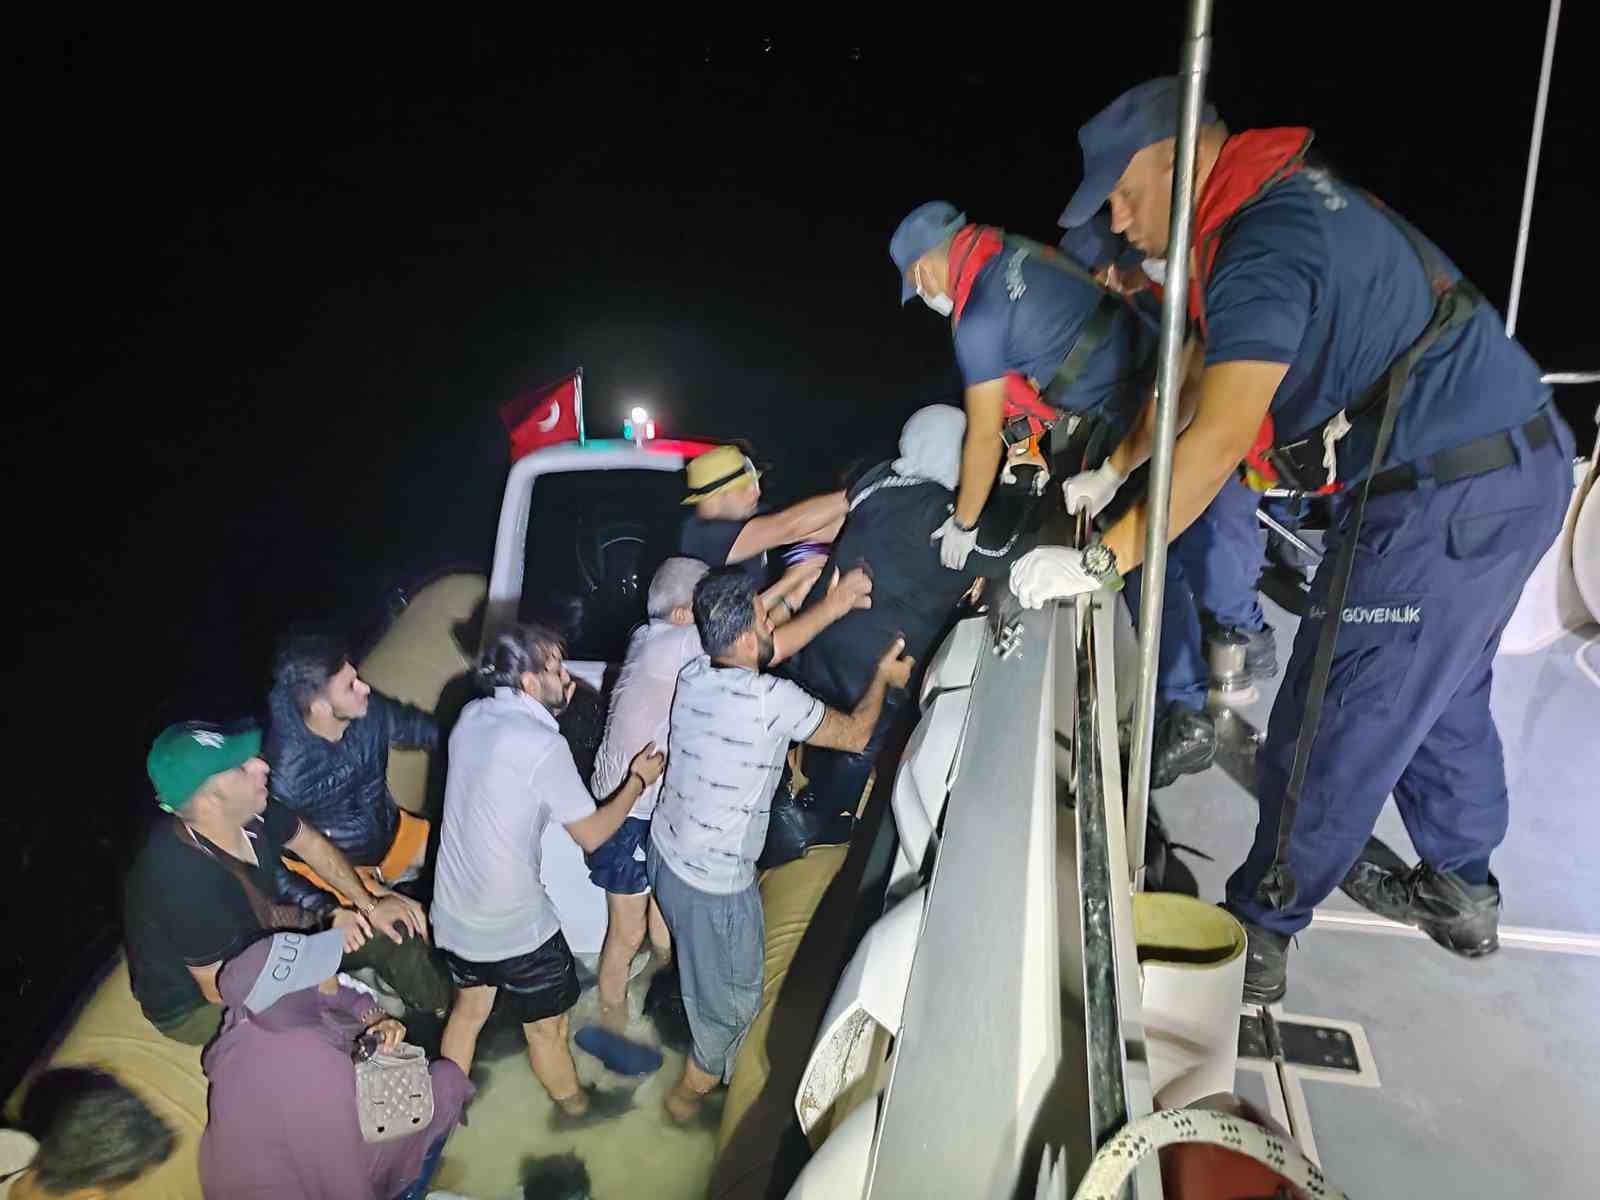 Düzensiz göçmenler bot arızalınca yardım istediler